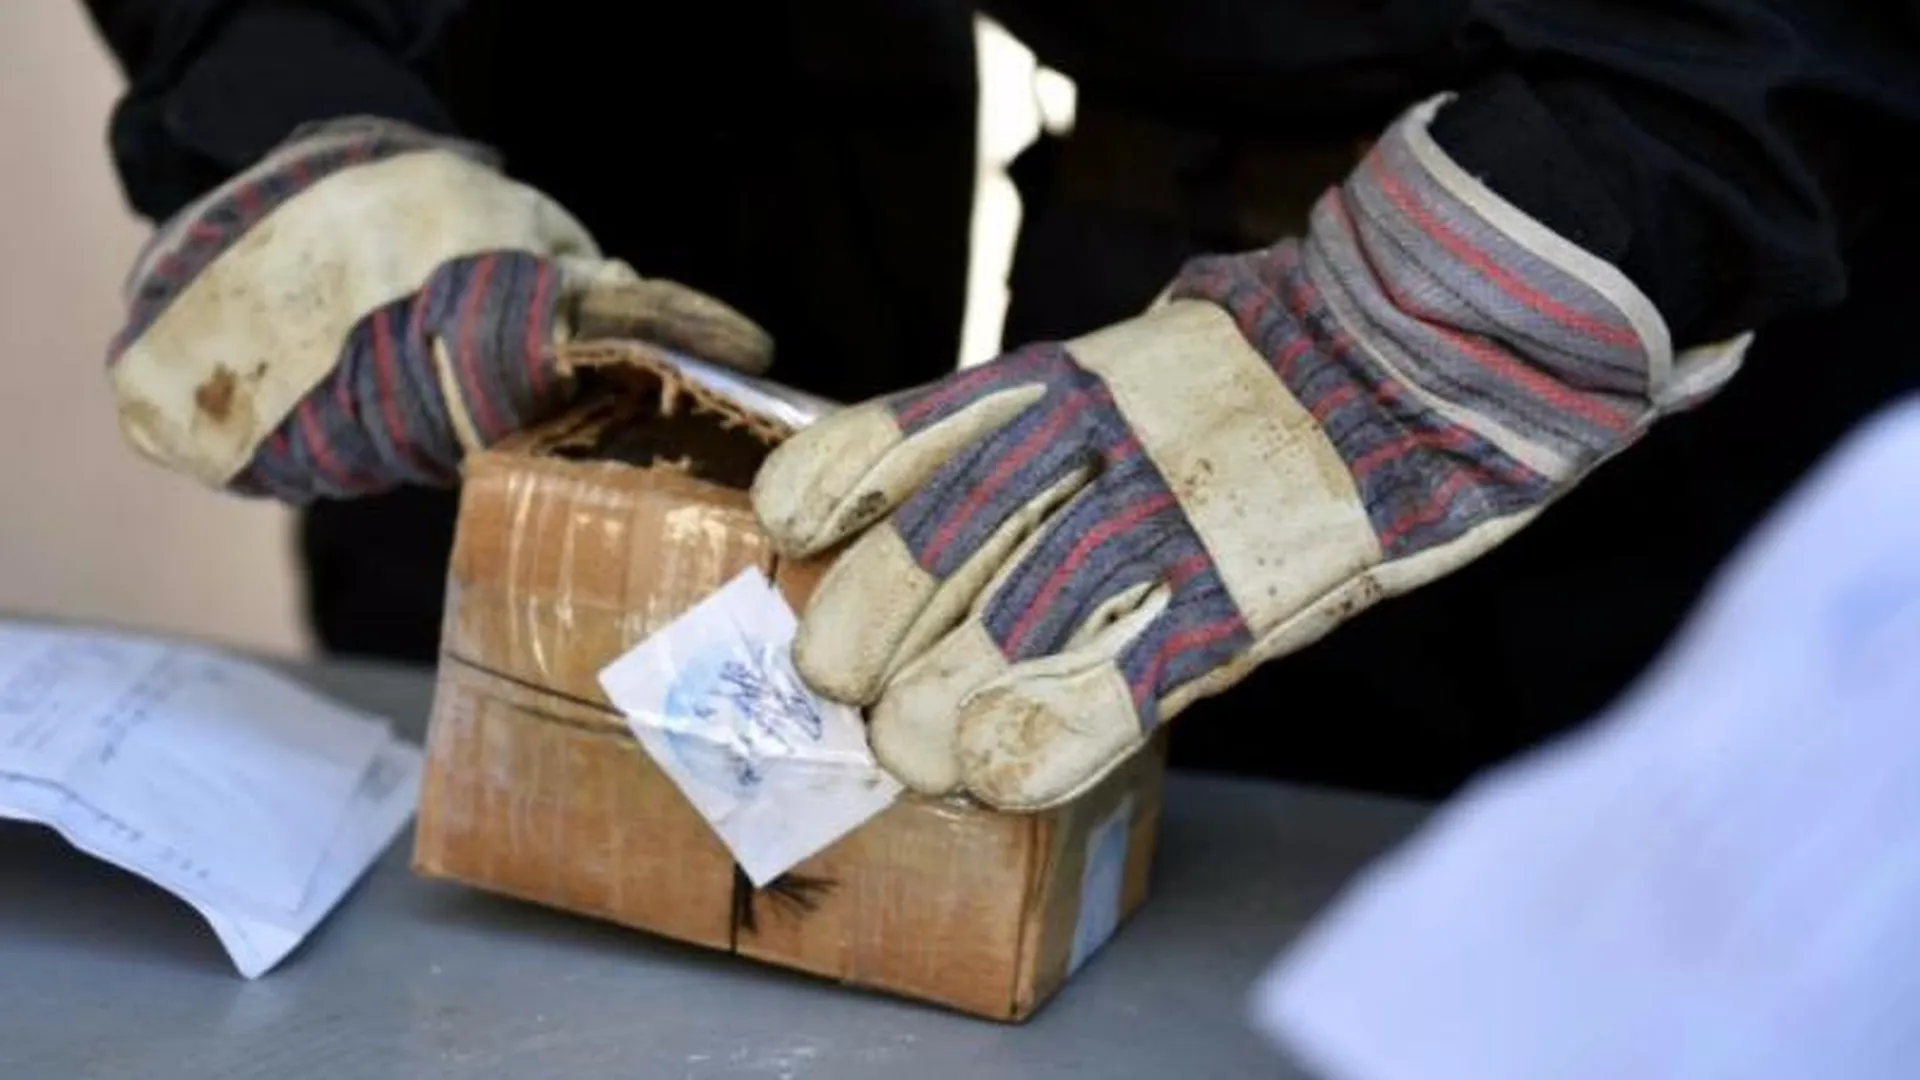 Гаишники нашли 700 граммов наркотика при обыске автолюбителя в Москве